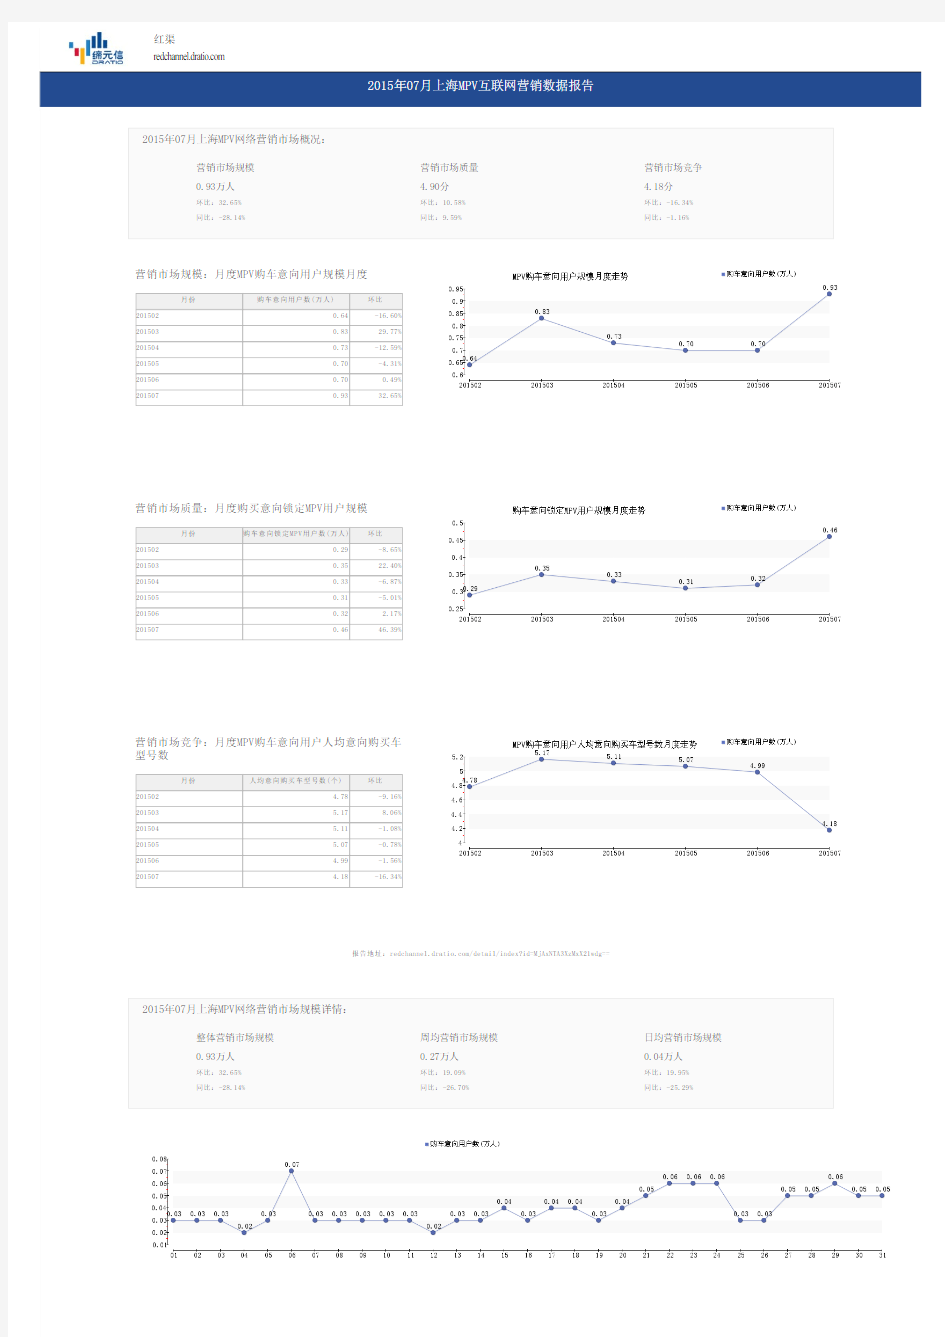 2015年07月上海MPV互联网营销数据报告